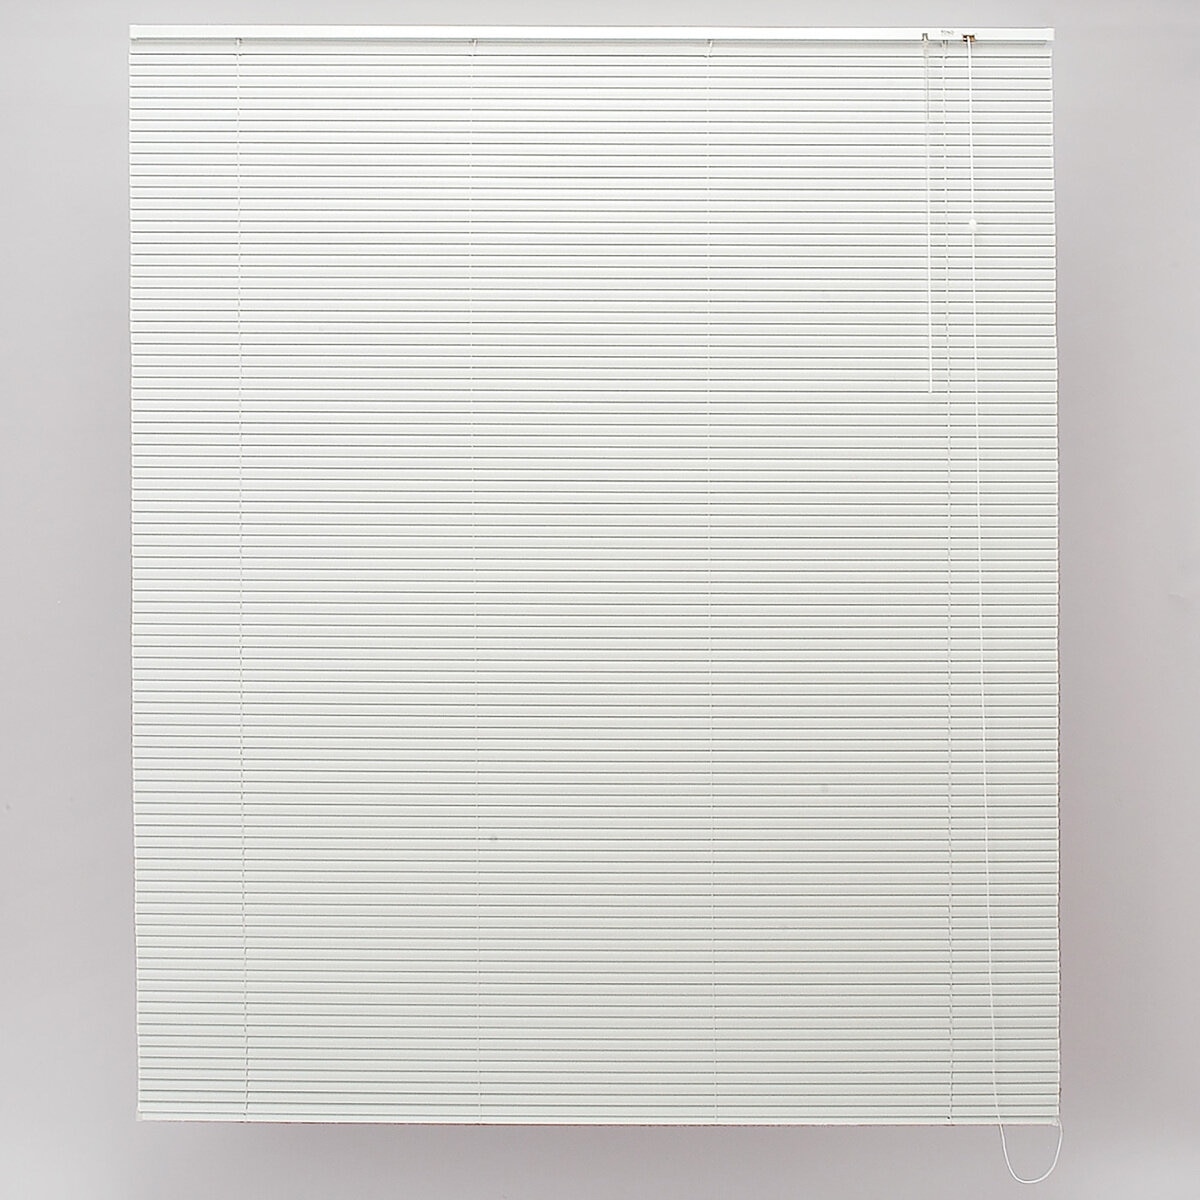 トーソー スポーラR IB アルミブラインド 178 cm x 138 cm ホワイト